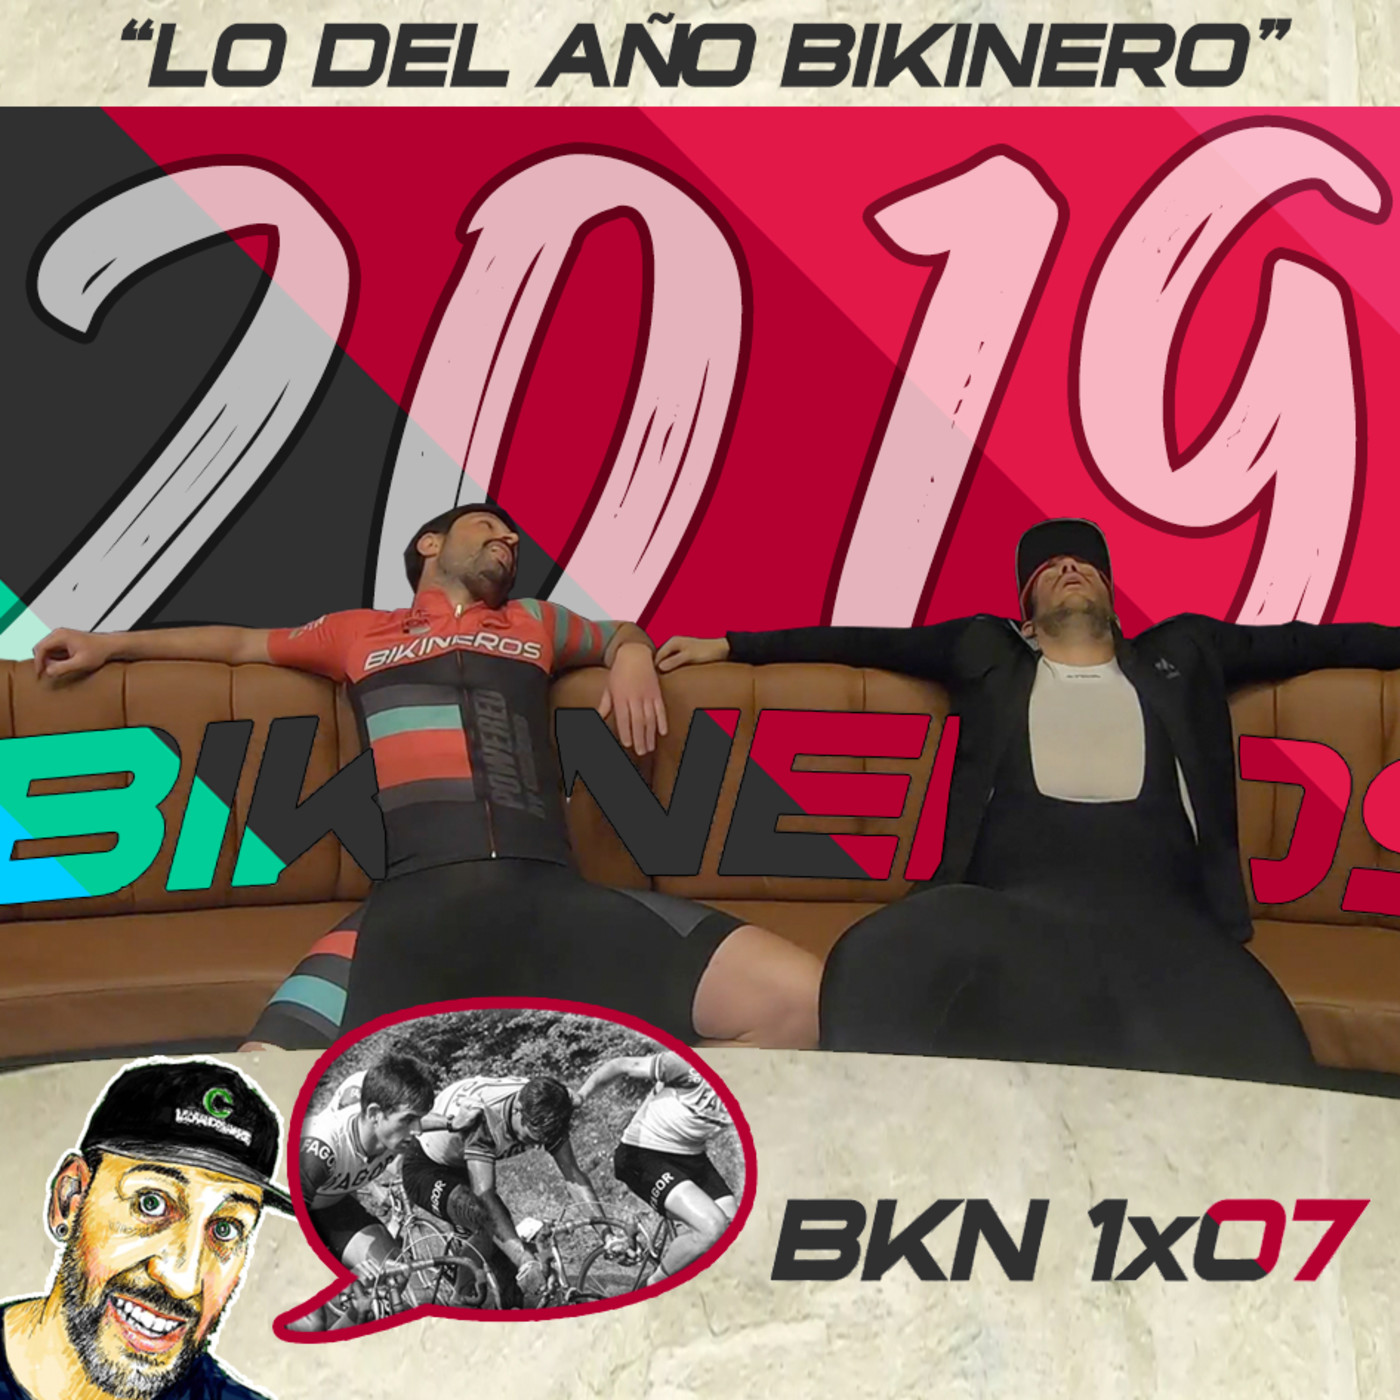 BKN 1x07: Lo del año Bikinero y Luis Ocaña